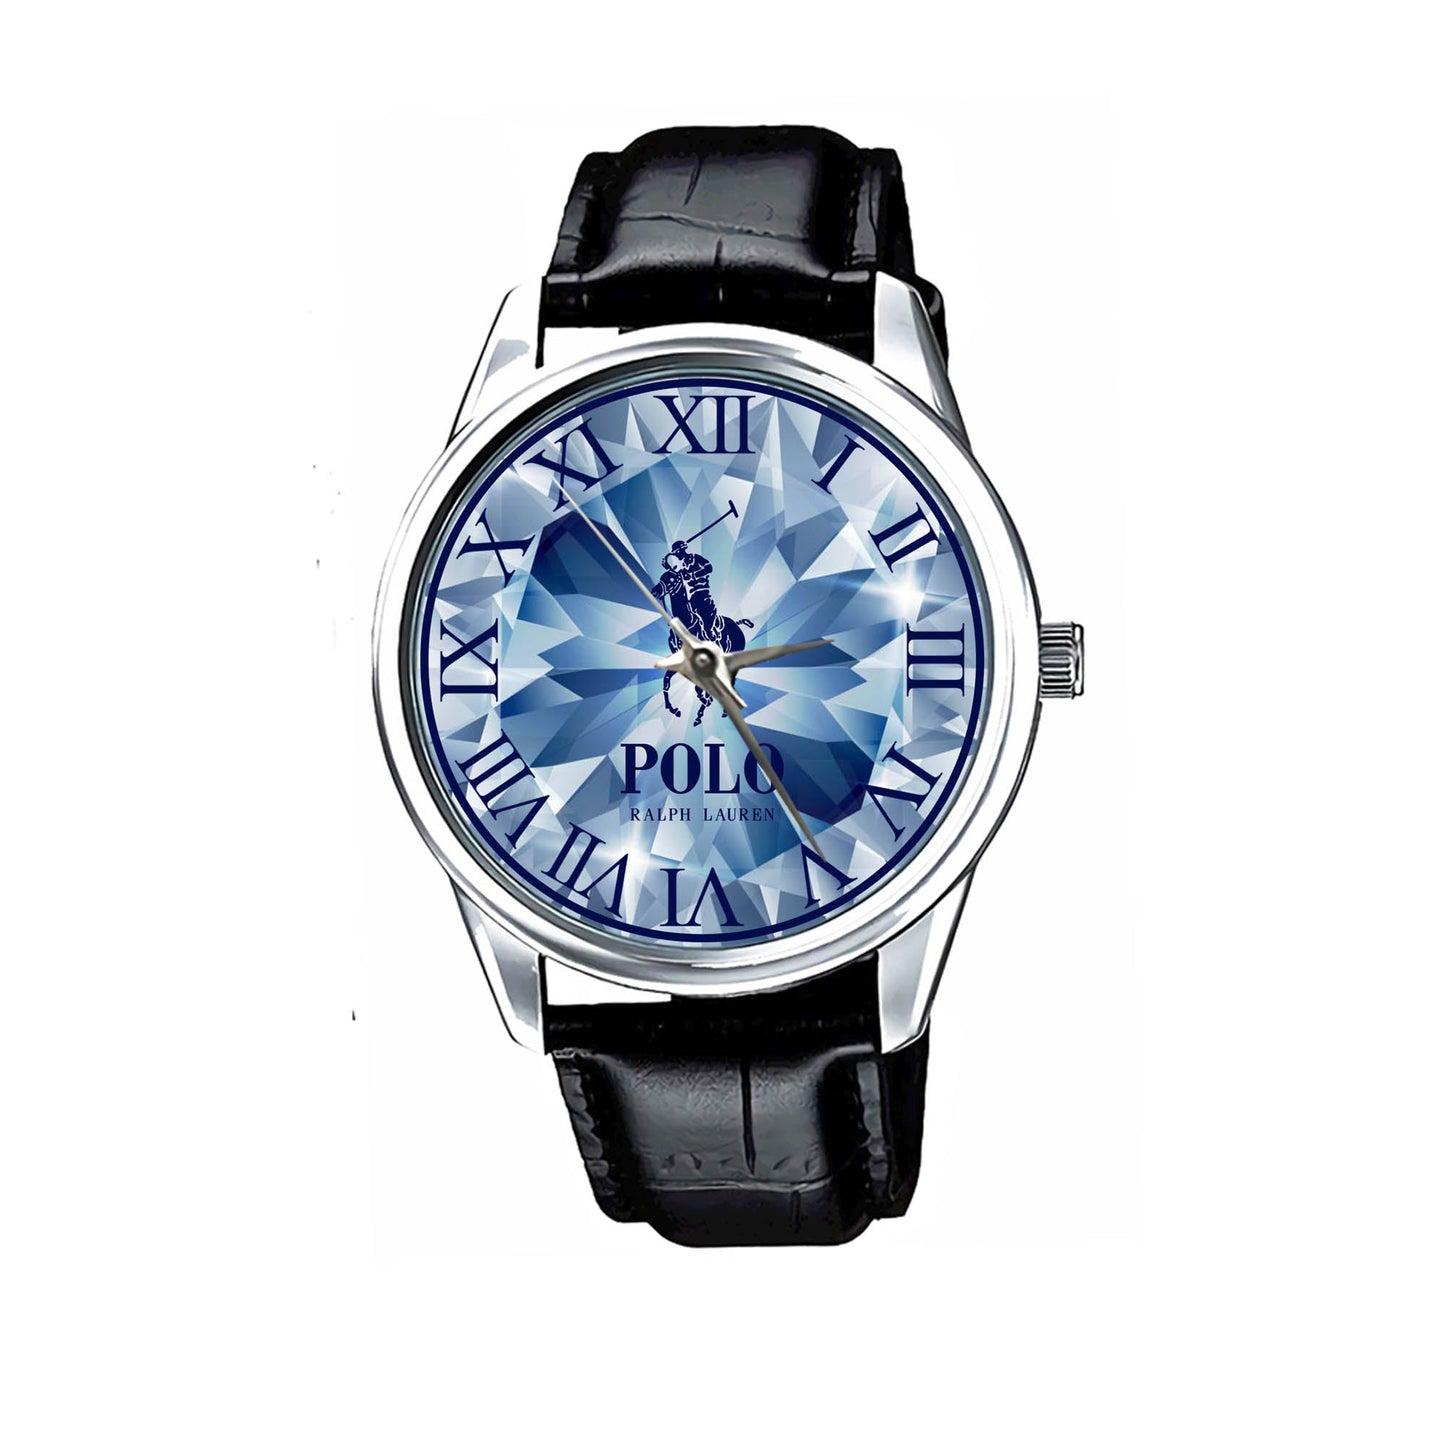 Polo Ralph Lauren Cristal motif Watch KP784